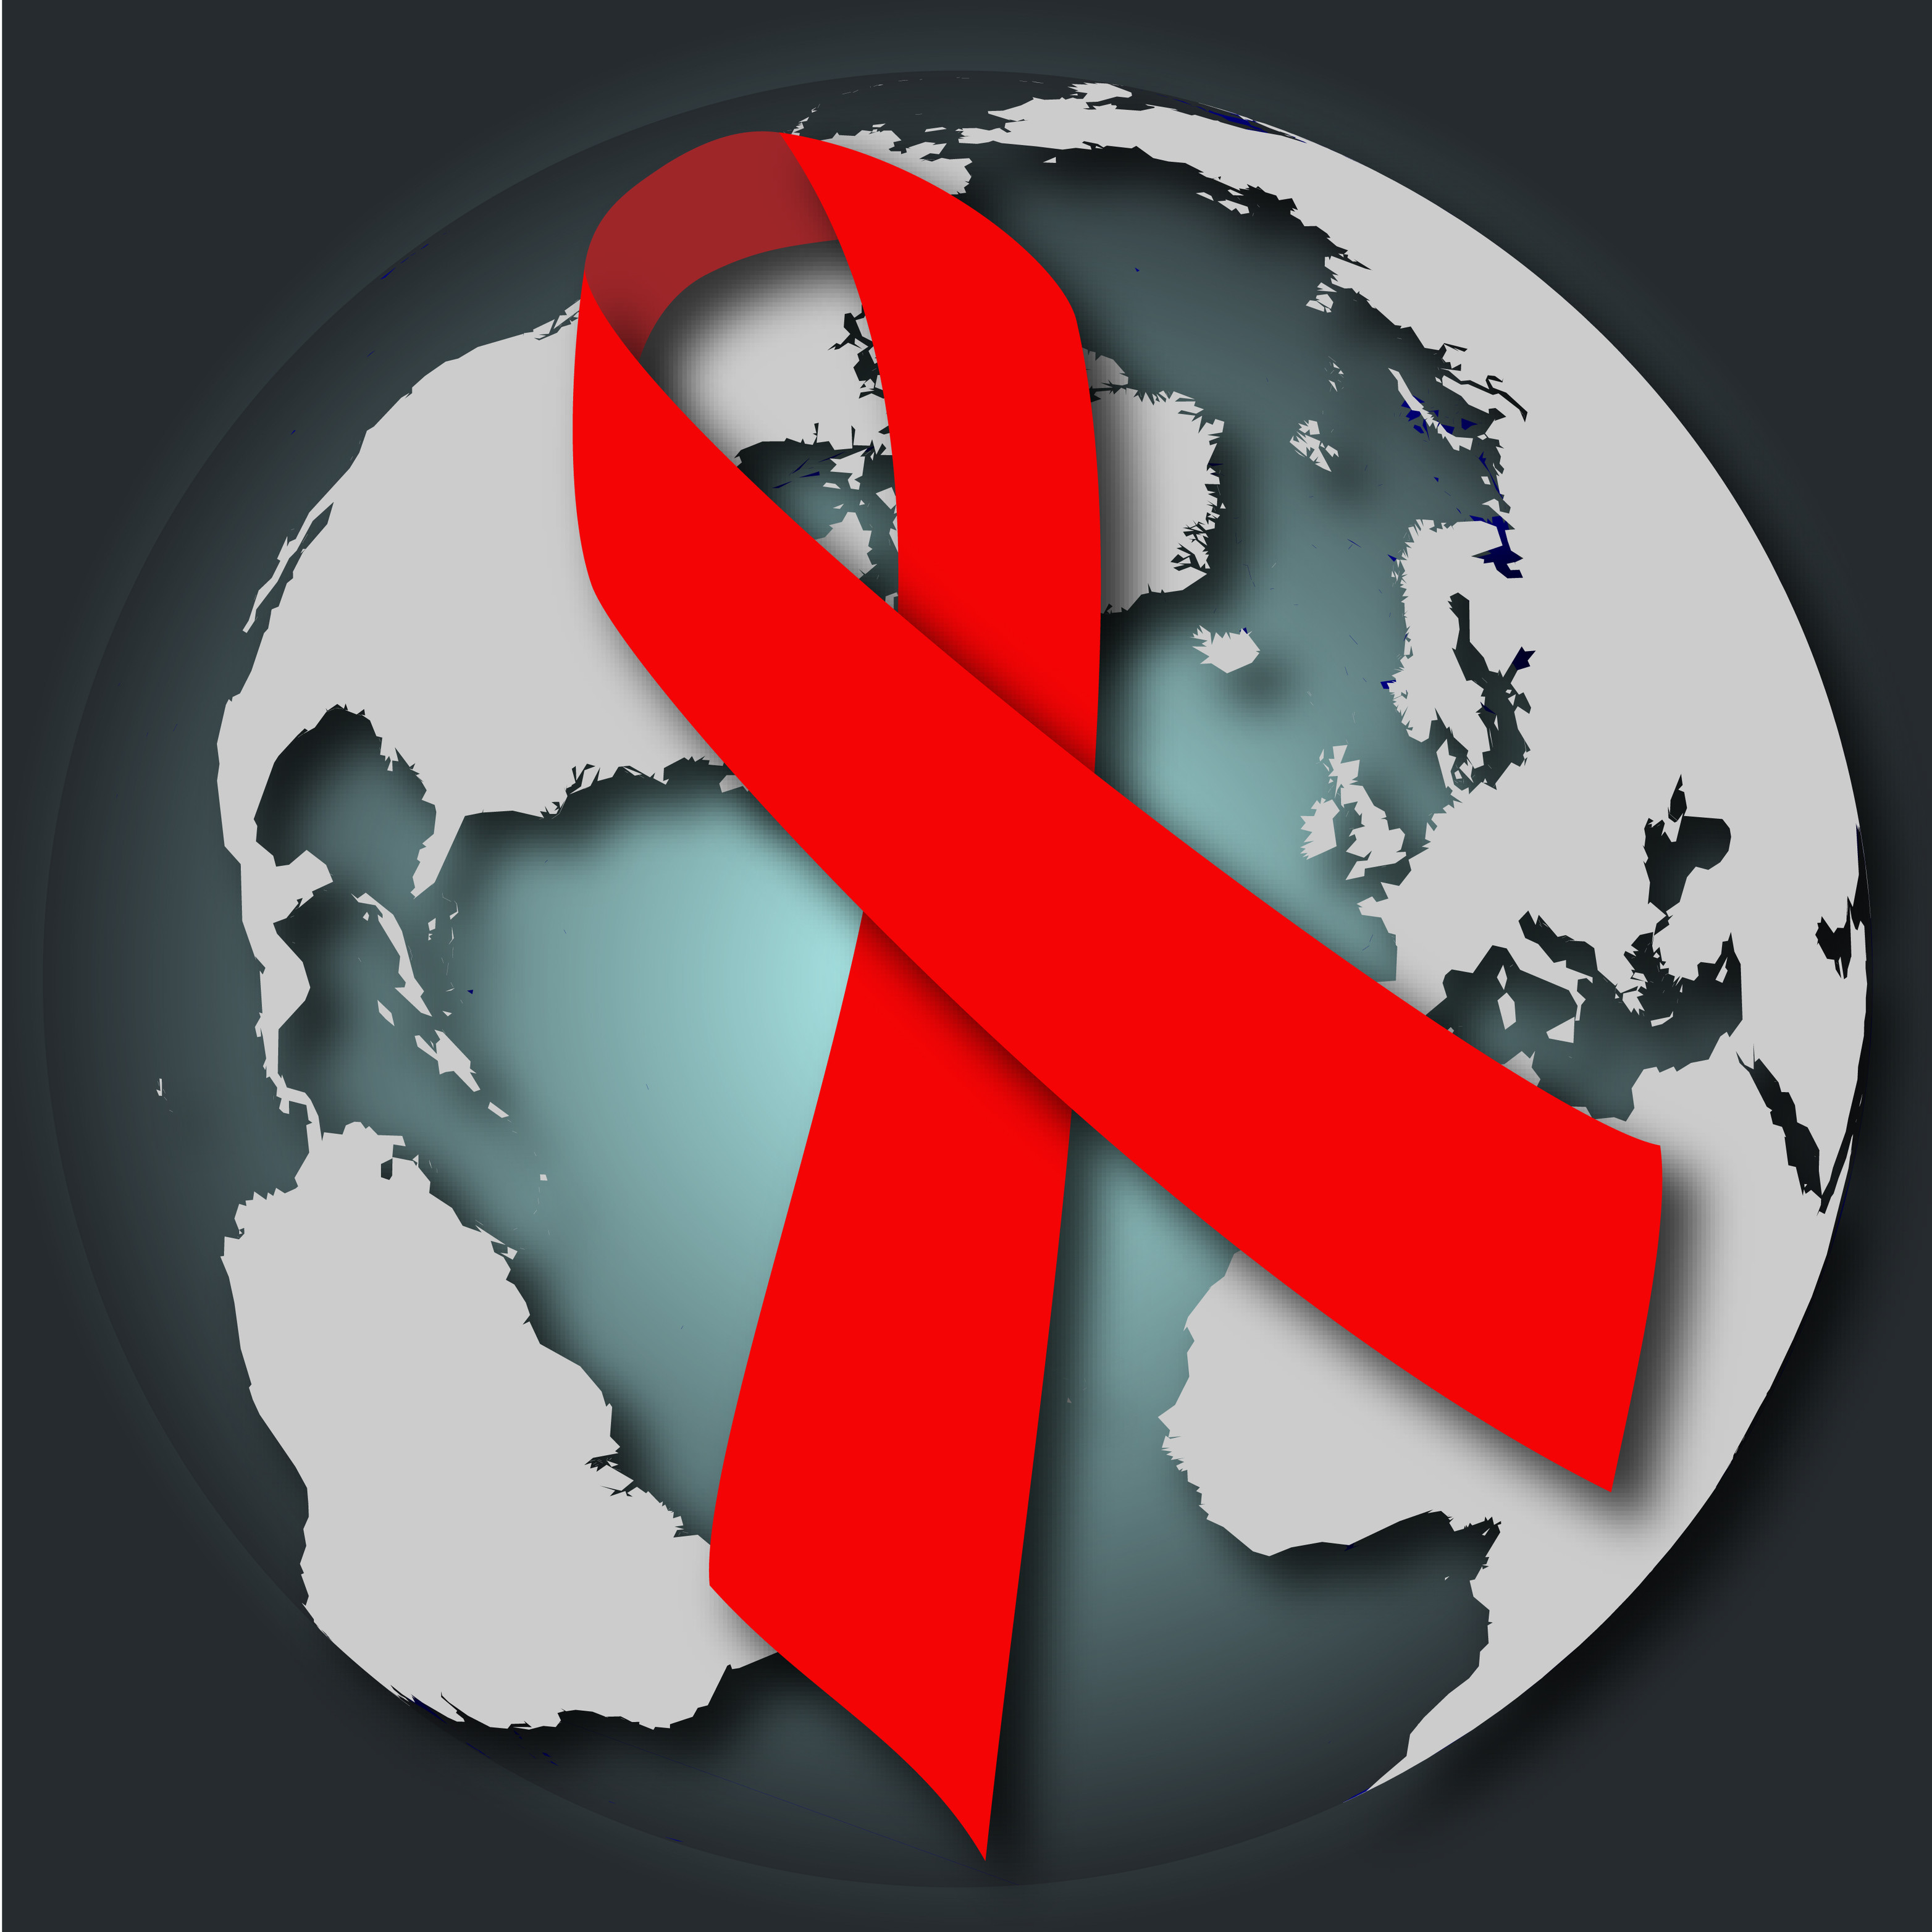 O laço vermelho se tornou símbolo da solidariedade na luta contra a Aids